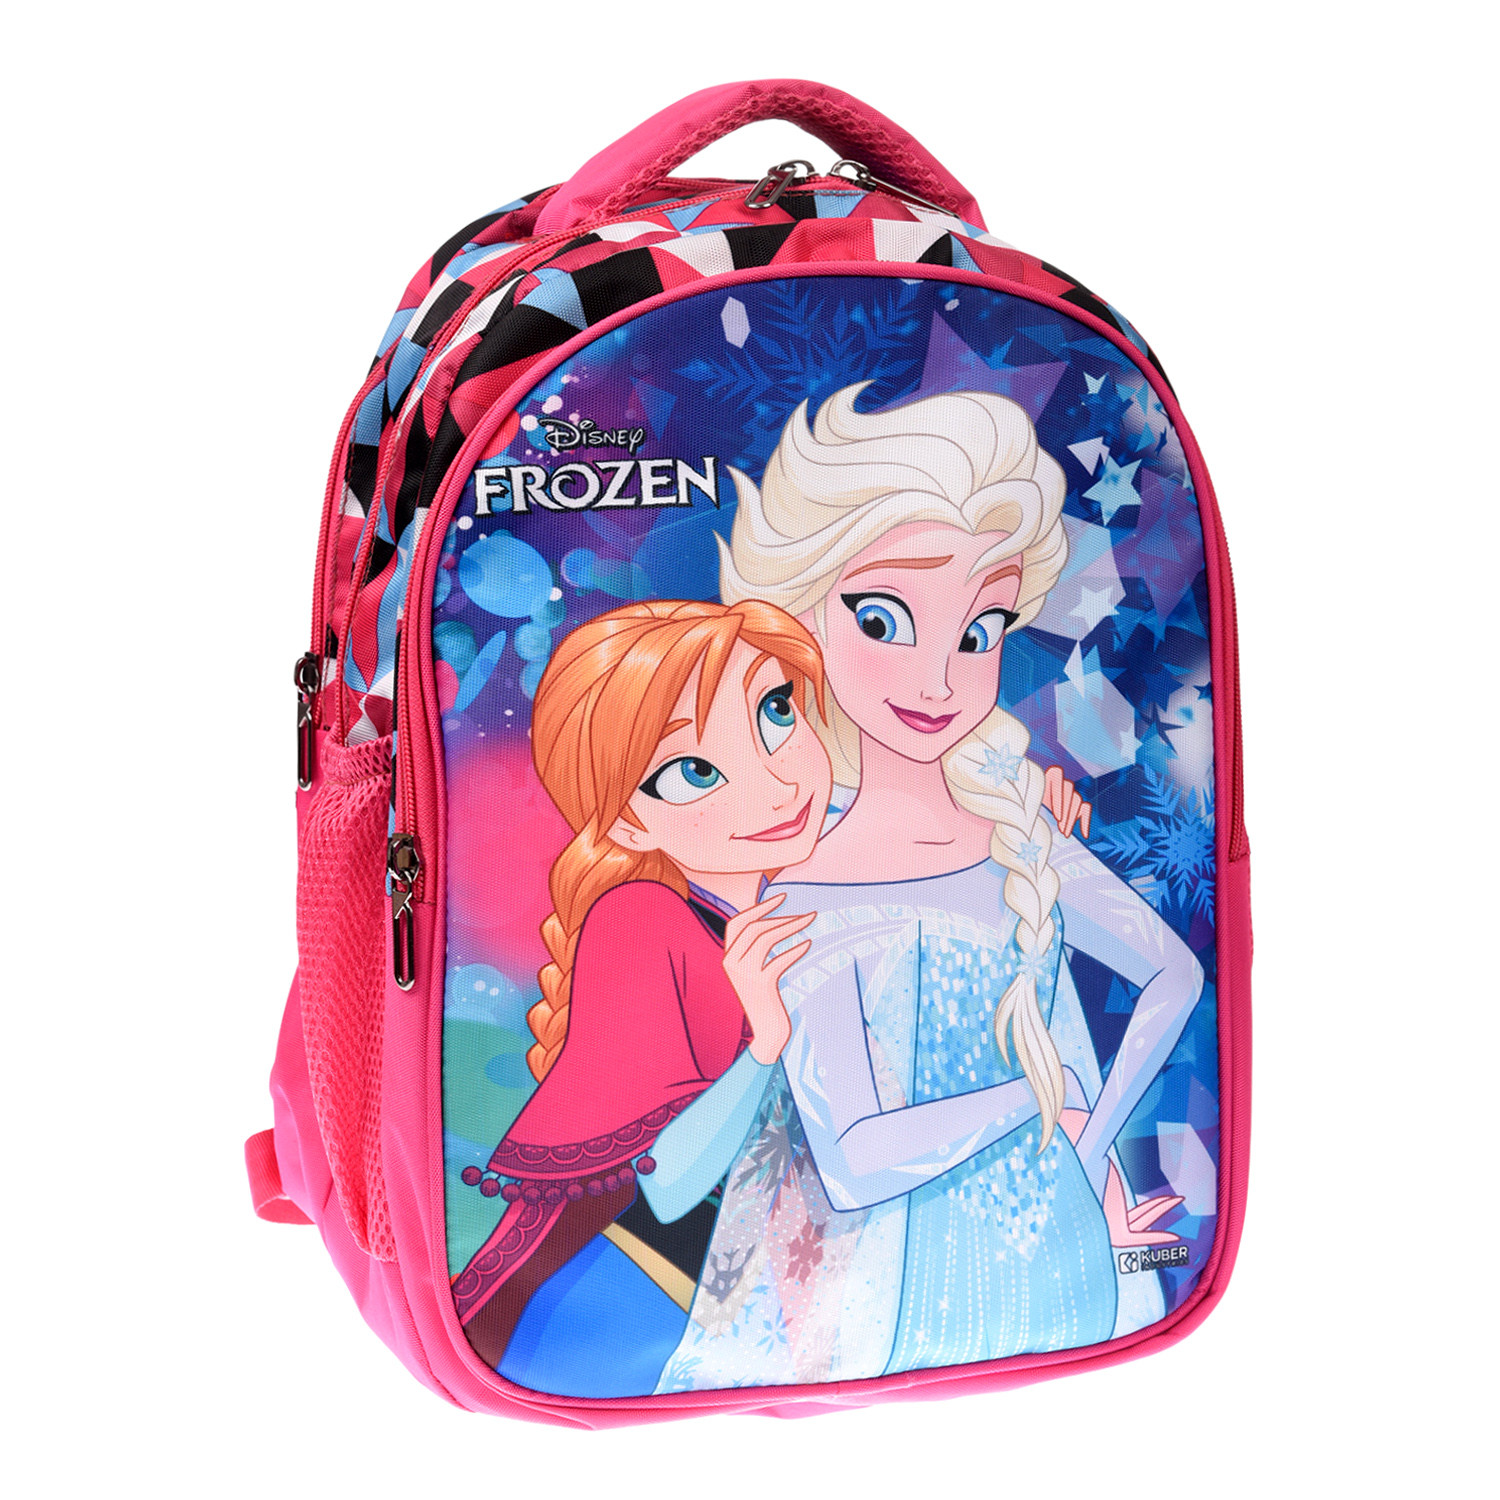 Kuber Industries Disney Frozen School Bag|3 Compartment Rexine School Bagpack|School Bag for Kids|School Bags for Girls with Zipper Closure (Pink)